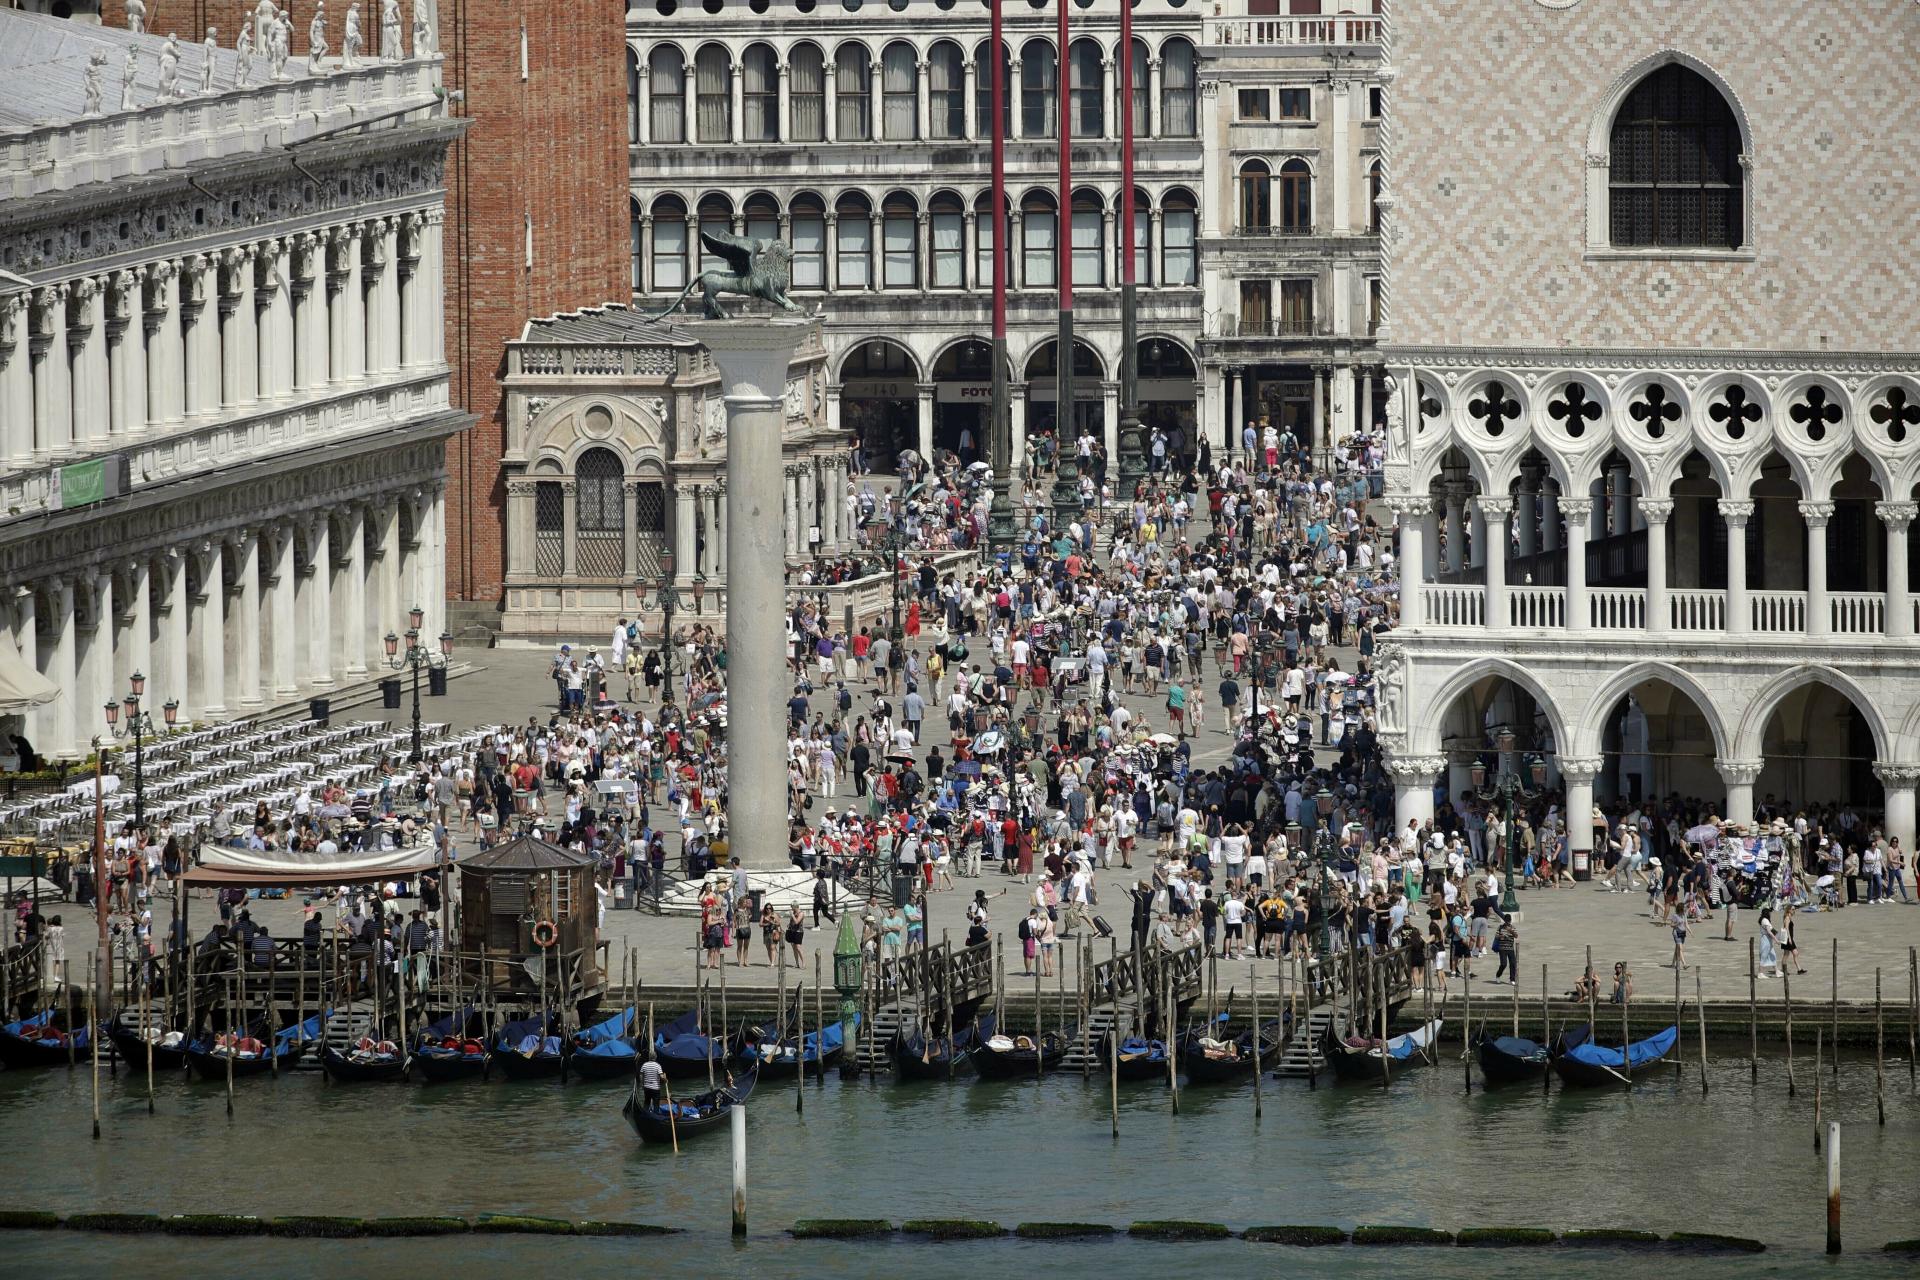 Turisti sa už do Benátok nedostanú len tak. Mesto otestuje vstupné a obmedzenie počtu návštevníkov